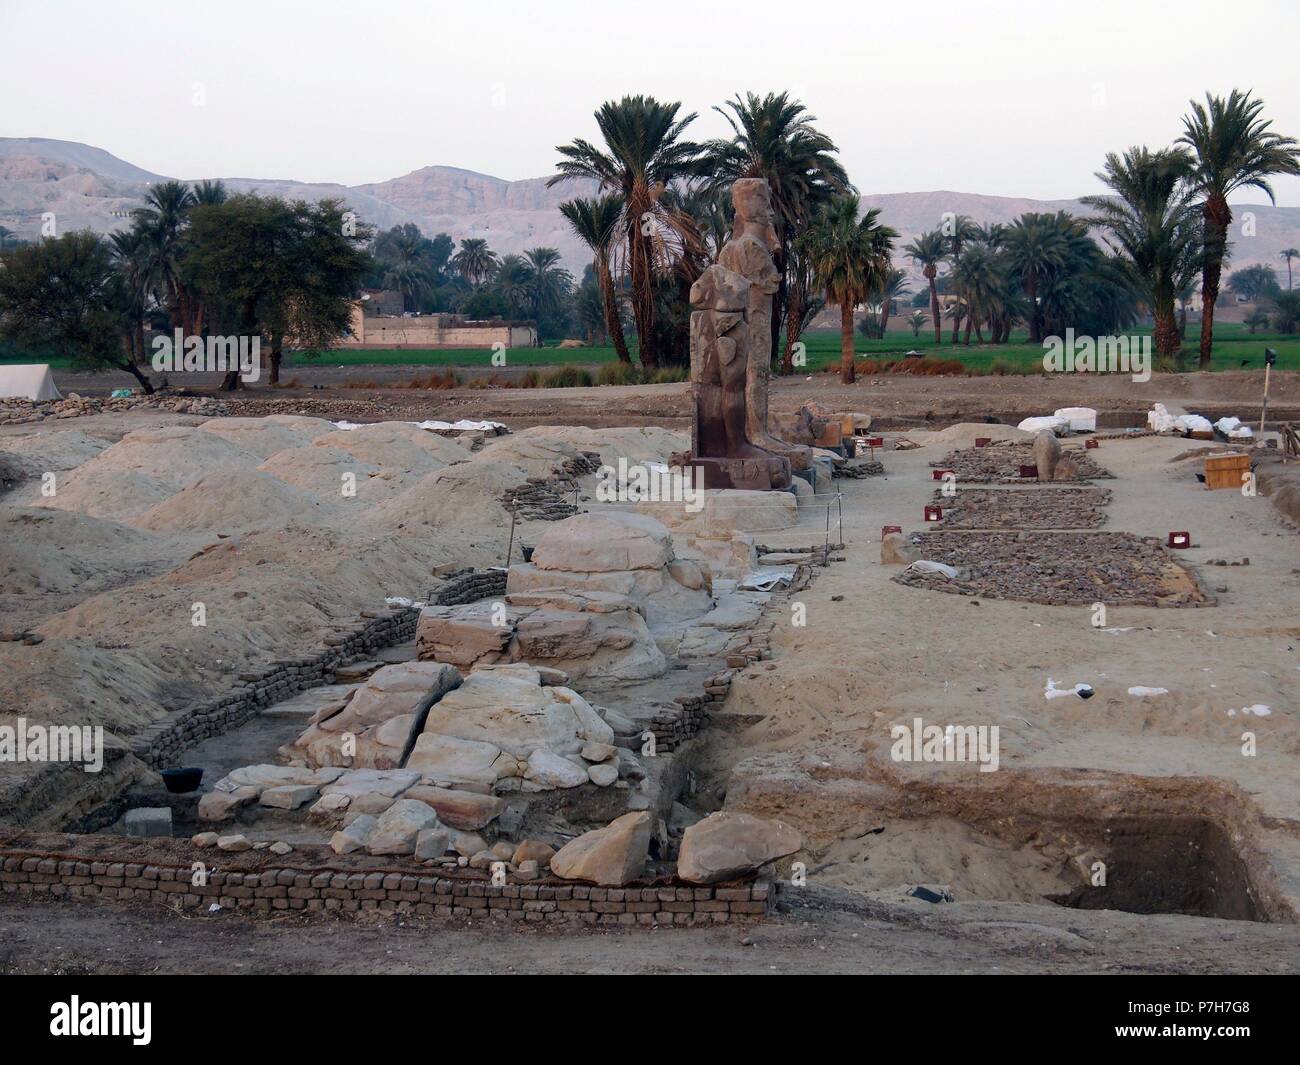 Los colosos de Memnón. Un paraje magnifico dos estatuas de piedra que représentent al mãtico Amenhoteph faraón Amenofis III o III, ubicadas en occidental la Ribera del río Nilo, frente Luxor y al sur de las famosas la necrópolis. Tebanas Banque D'Images